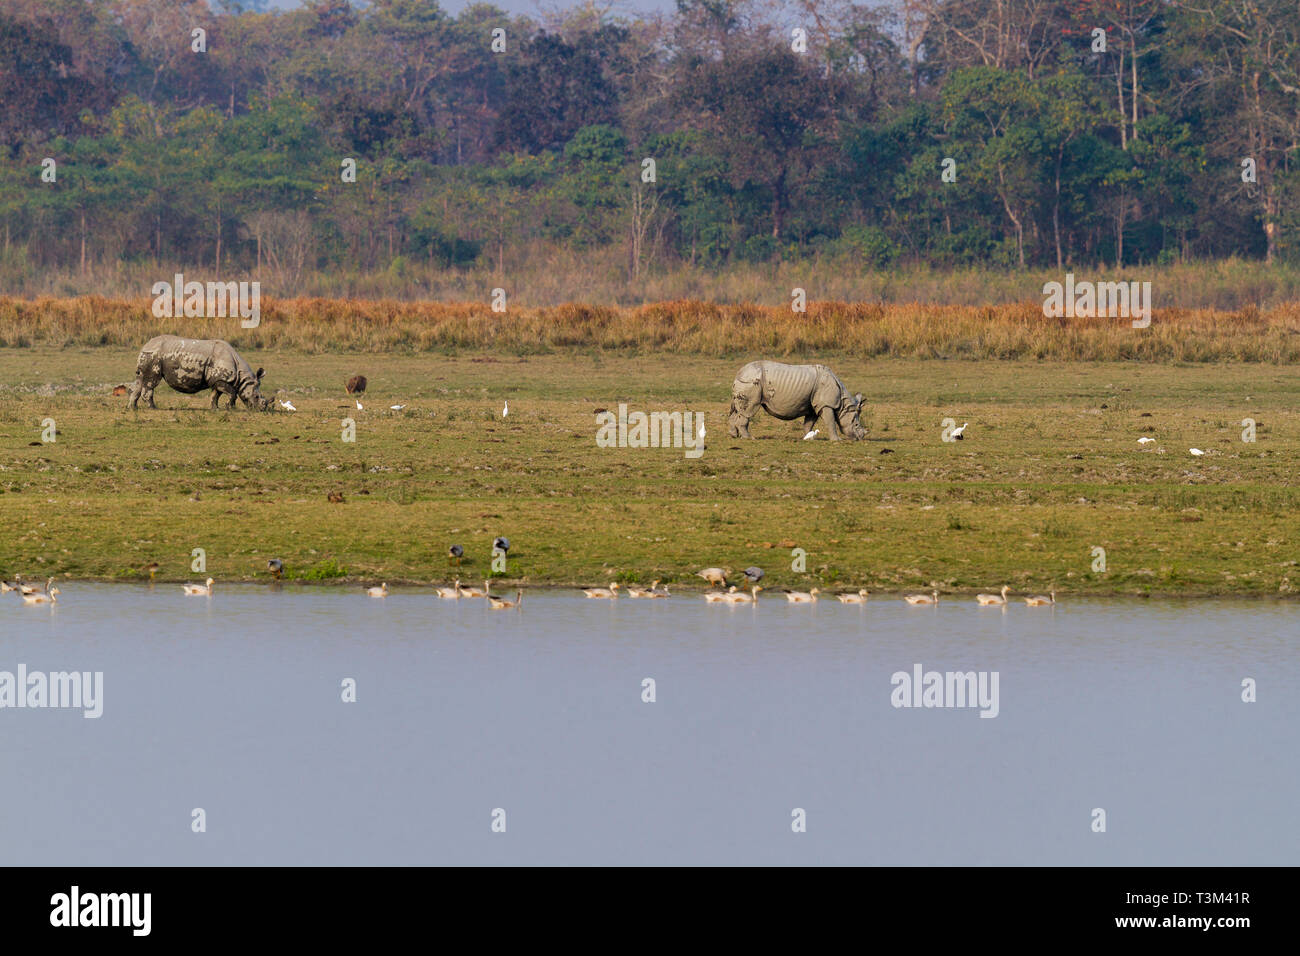 One Horned Indian Rhinoceros or Rhinoceros unicornis in Kaziranga national park Assam India Stock Photo